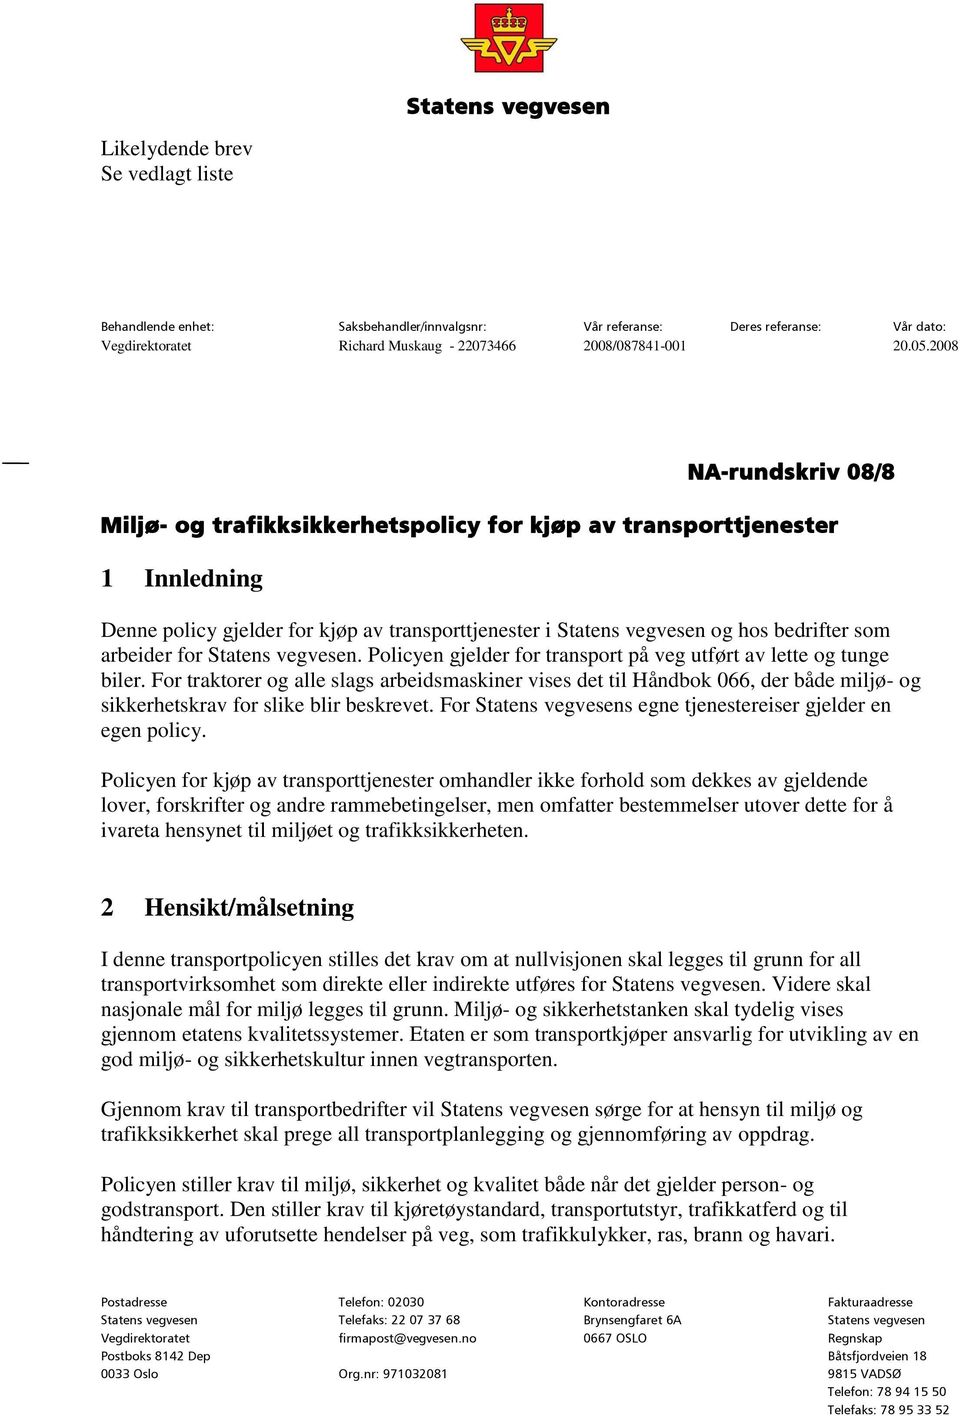 arbeider for Statens vegvesen. Policyen gjelder for transport på veg utført av lette og tunge biler.